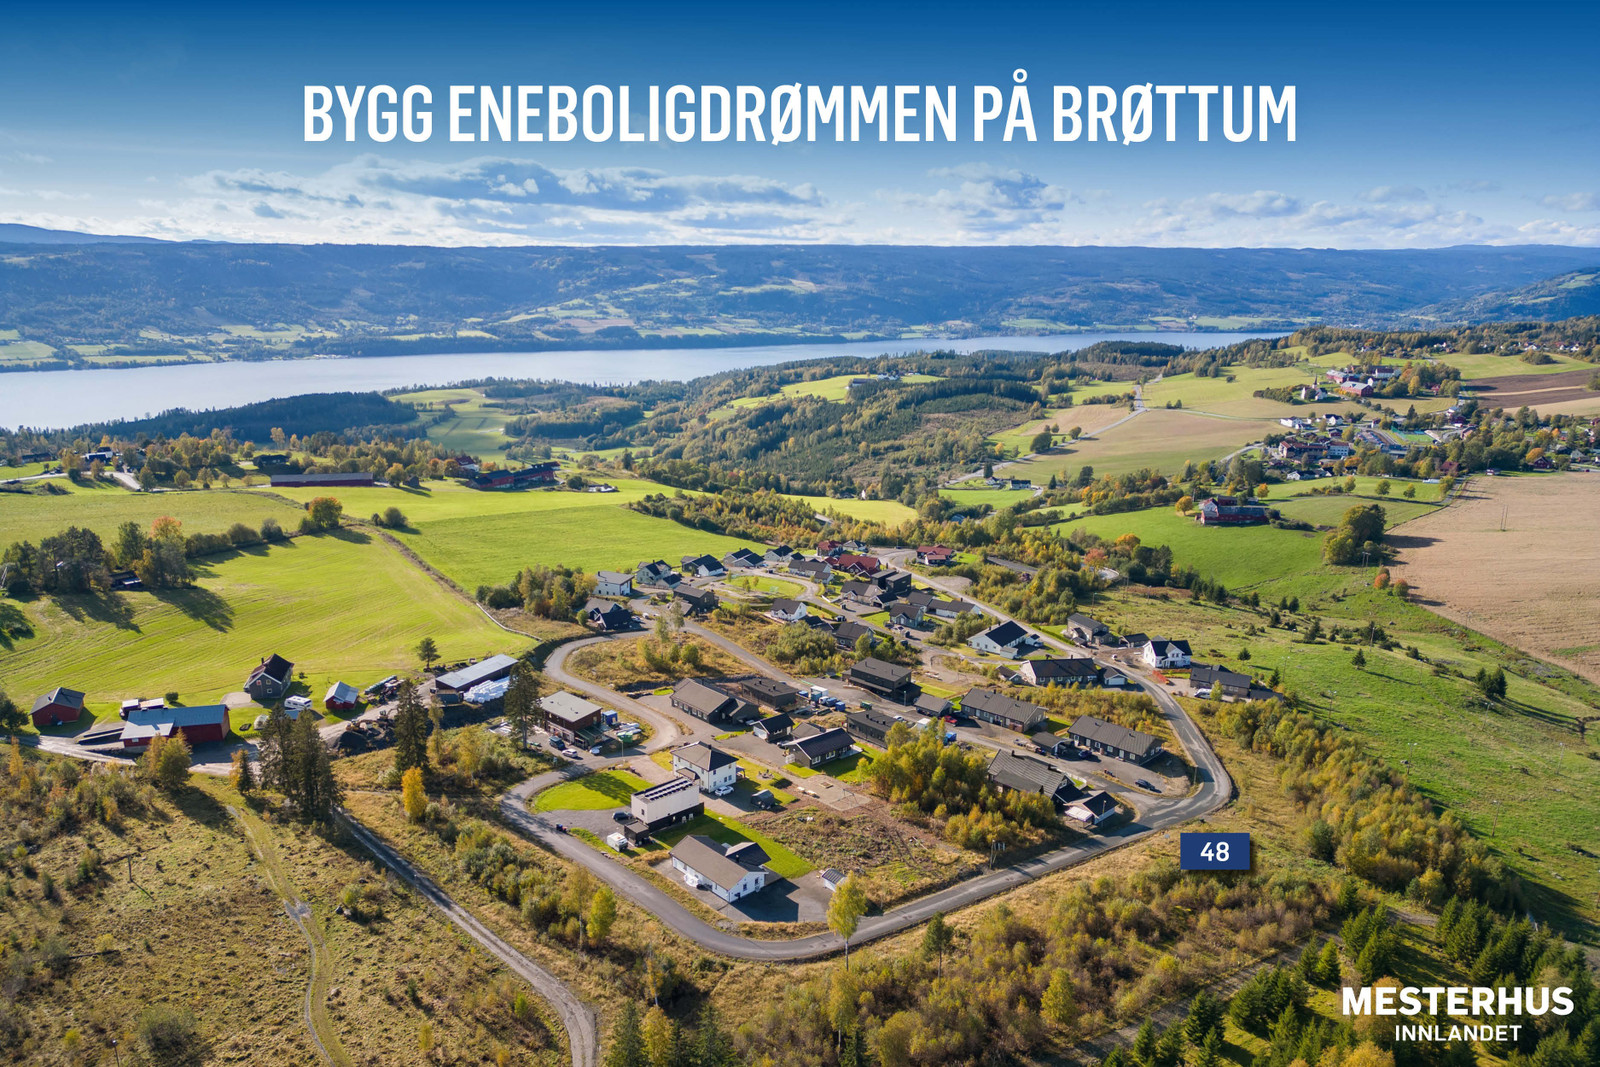 Velkommen til trivelige Almslia på Brøttum. Her kan vi bygge eneboligdrømmen for deg!